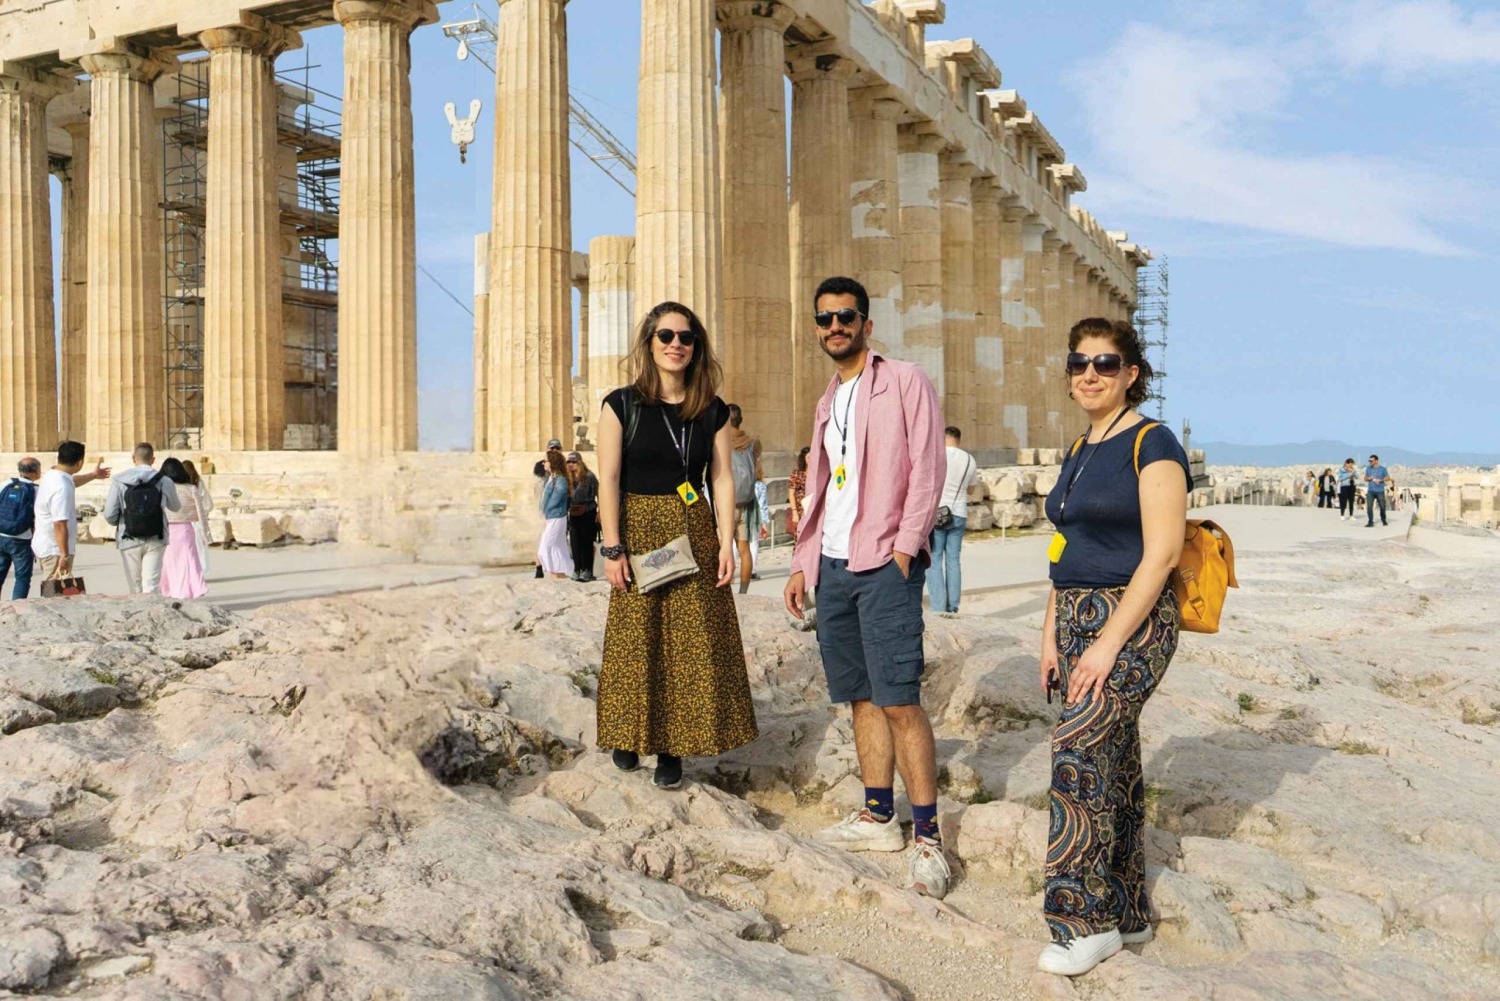 Atenas: Primeiro acesso à Acrópole e ao Parthenon: tour guiado